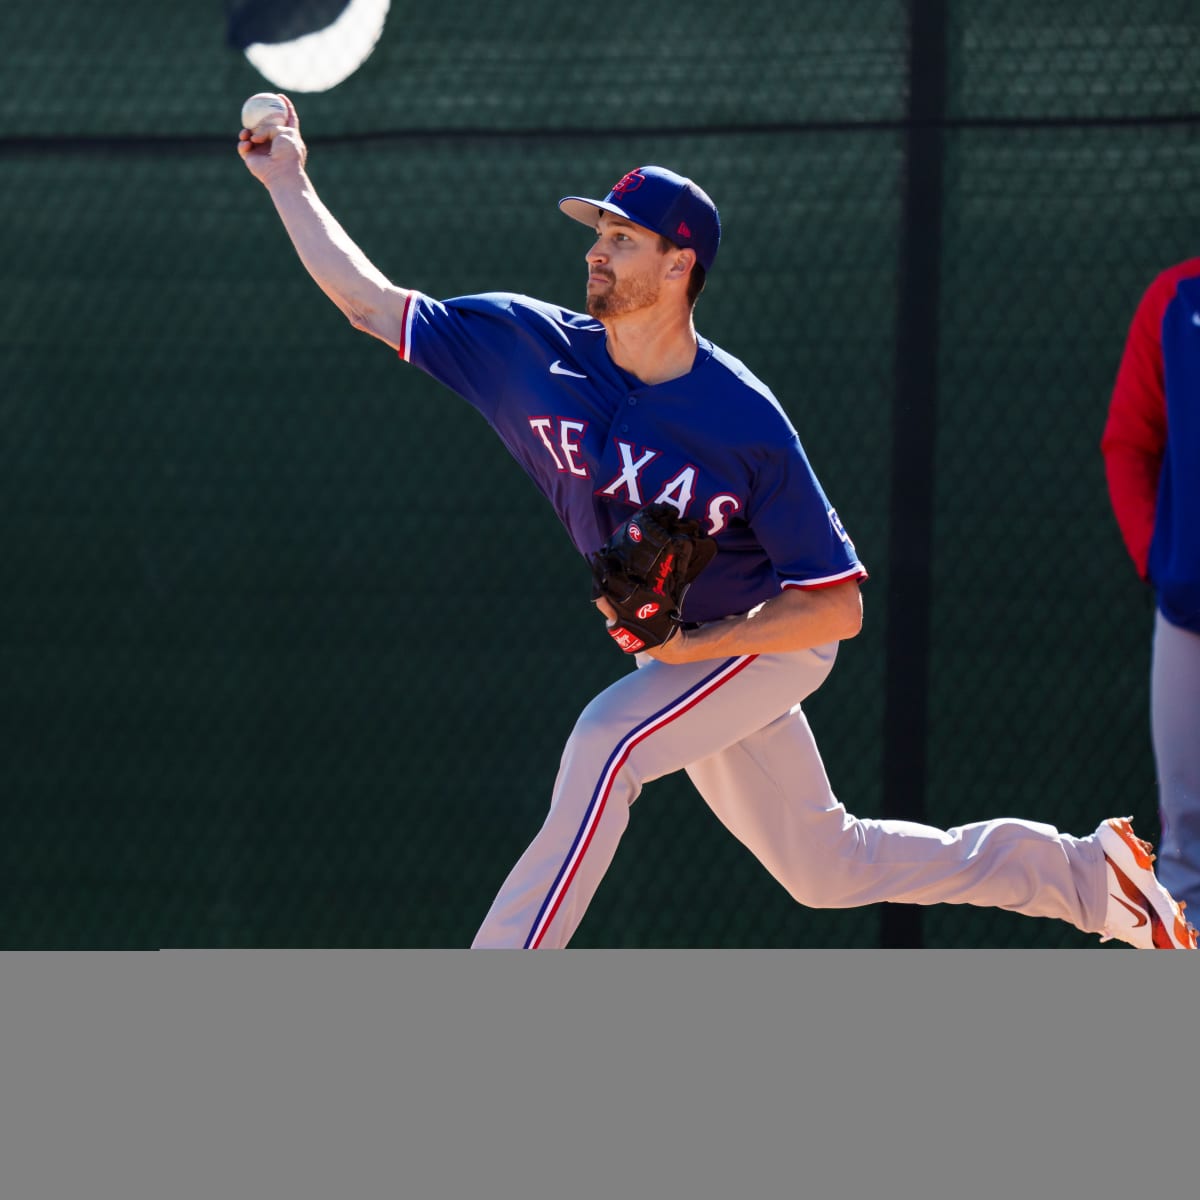 Jacob deGrom new bullpen session, Full video from Texas Rangers